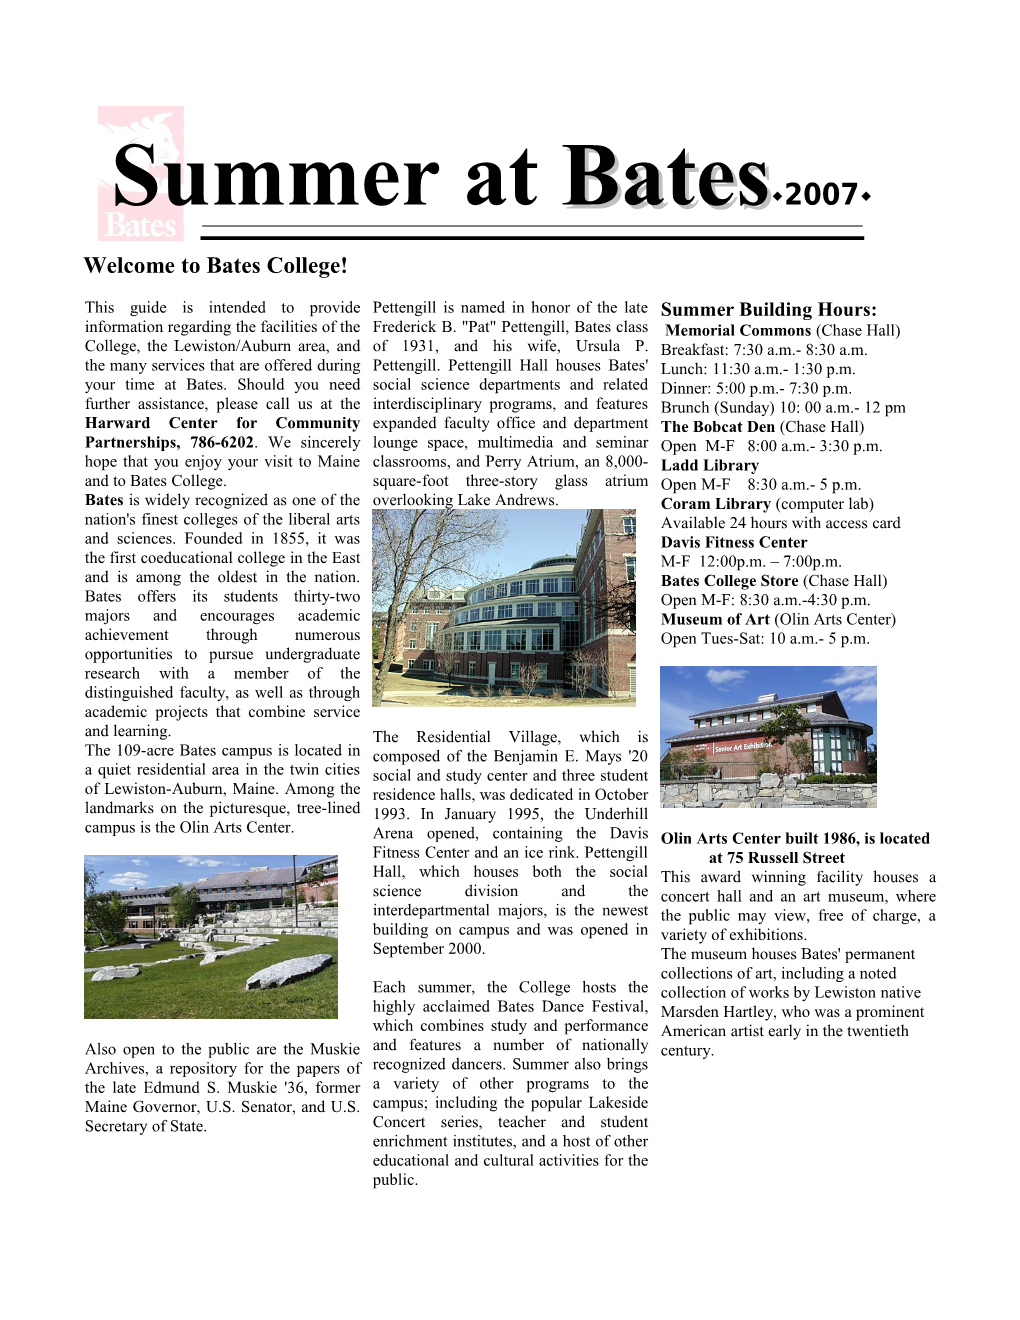 Summer at Bates 2002